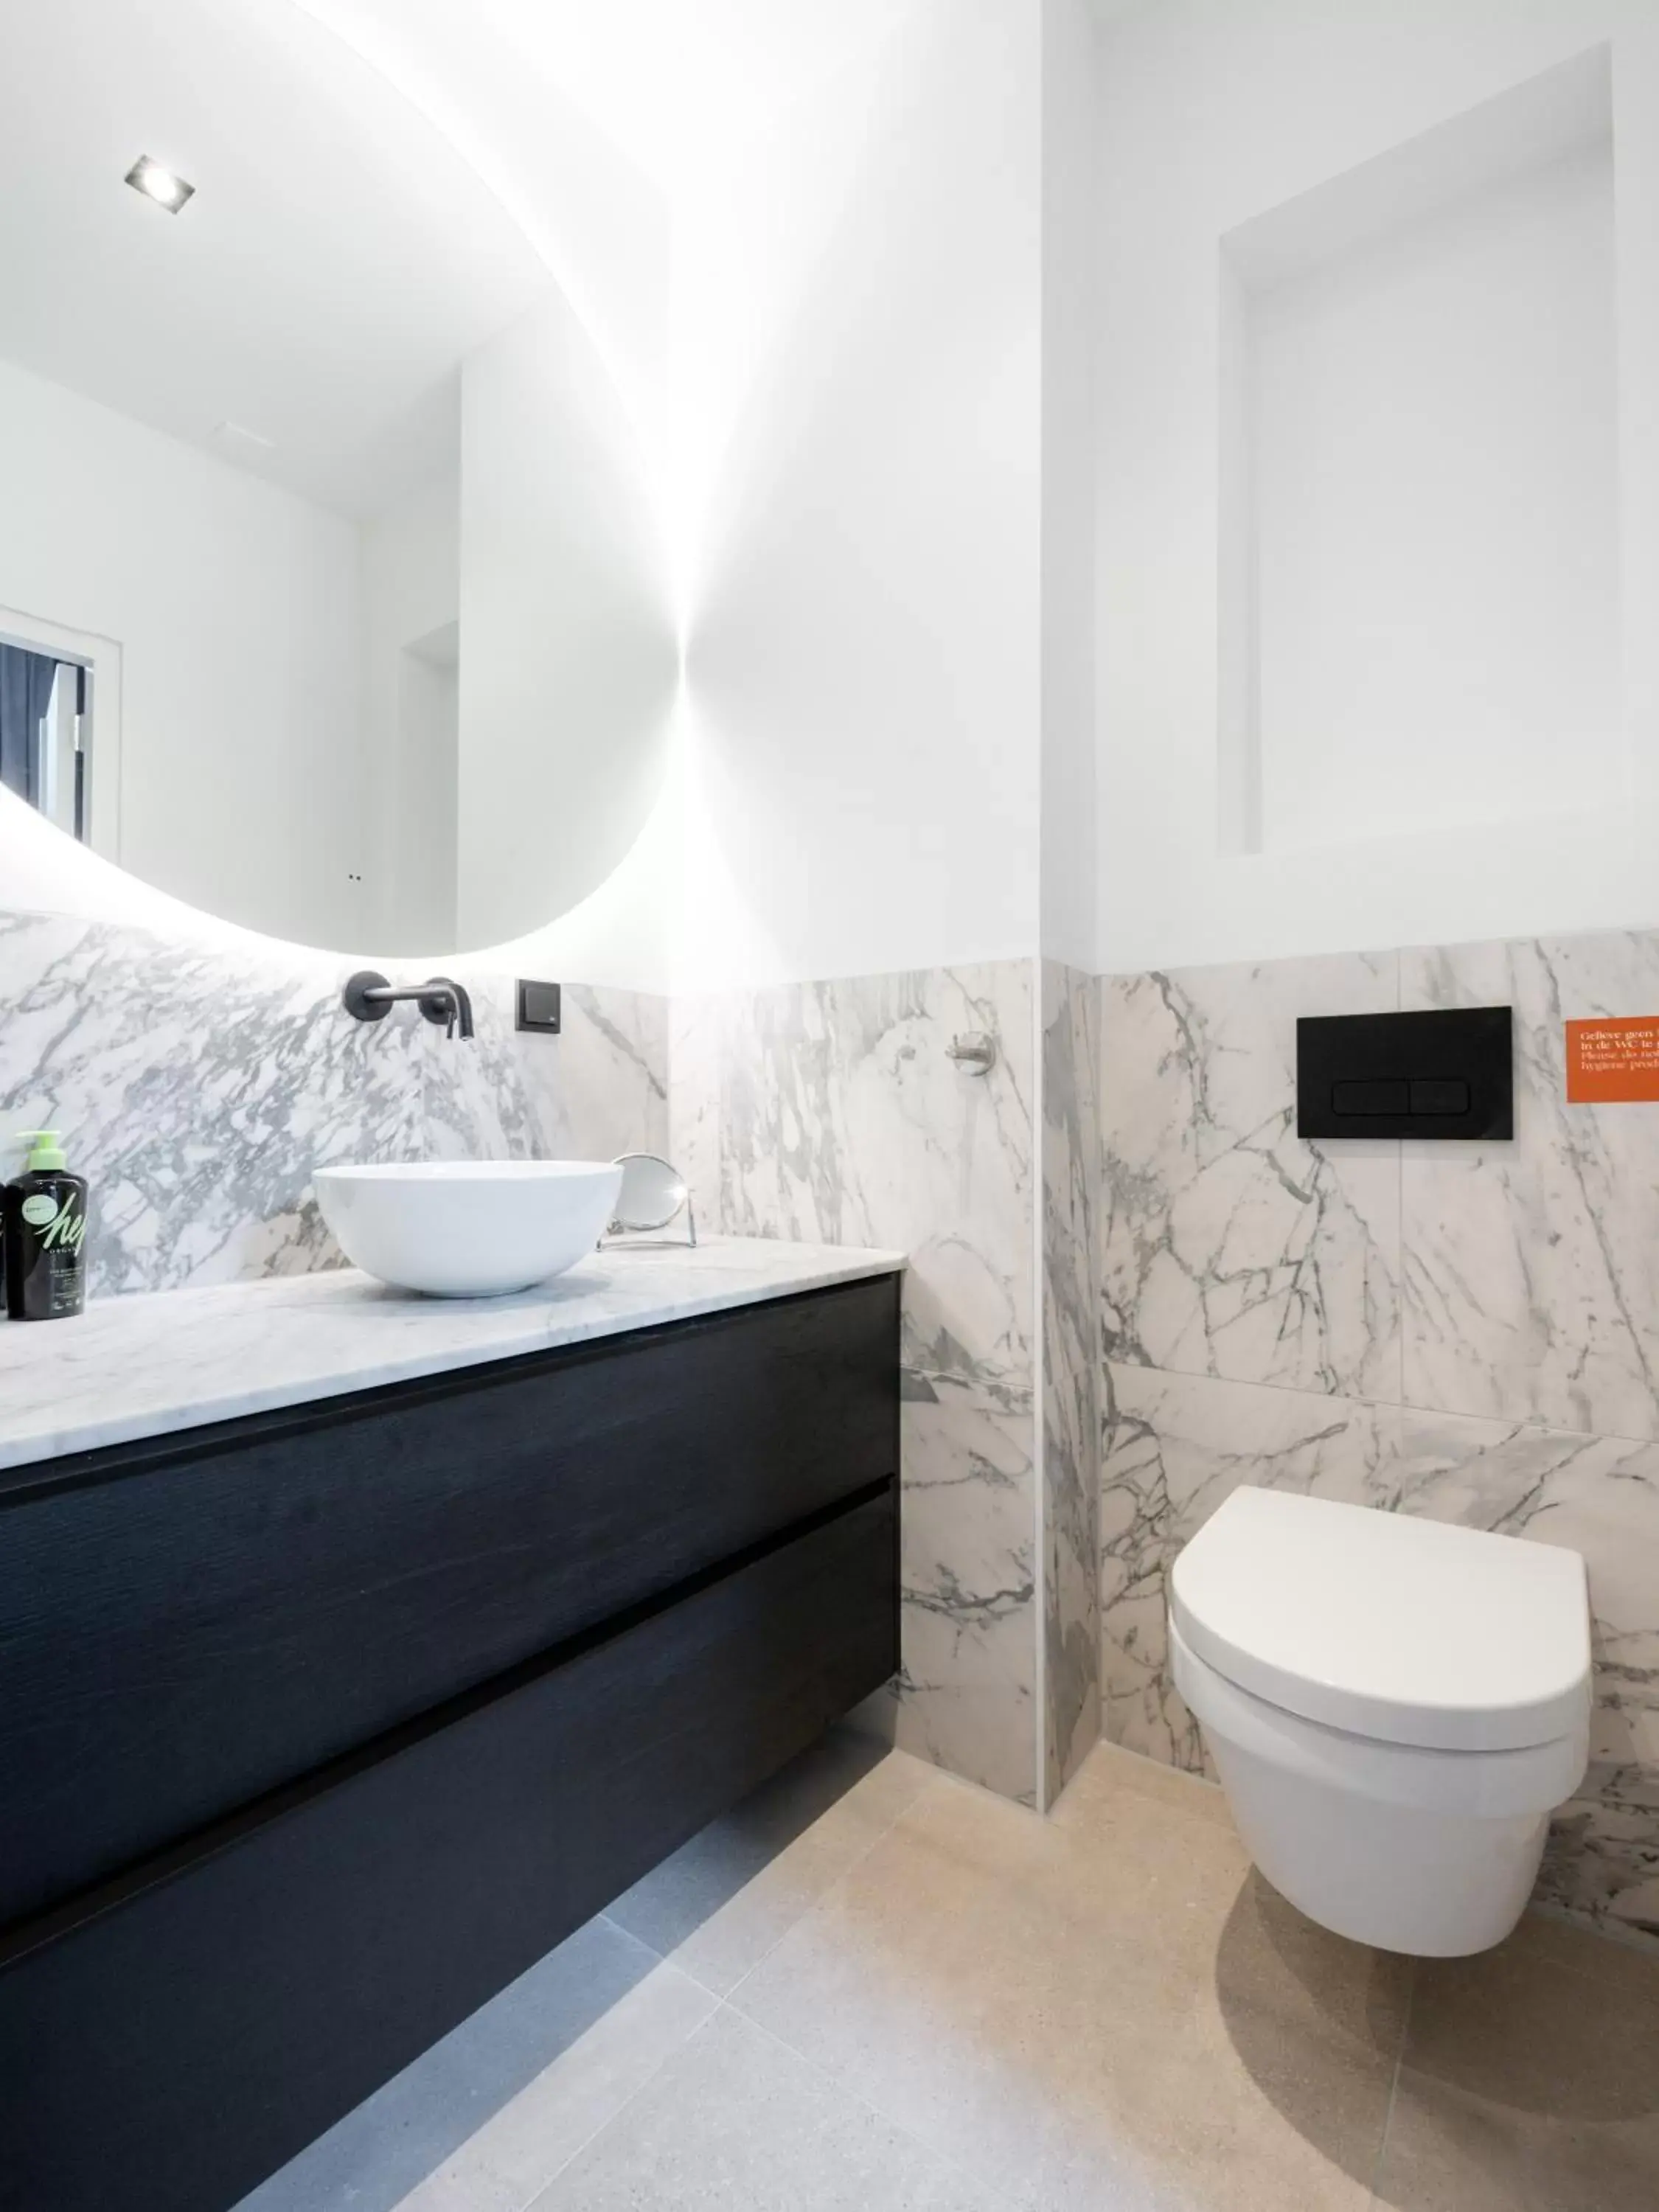 Bathroom in limehome Amsterdam Hemonystraat - Digital access